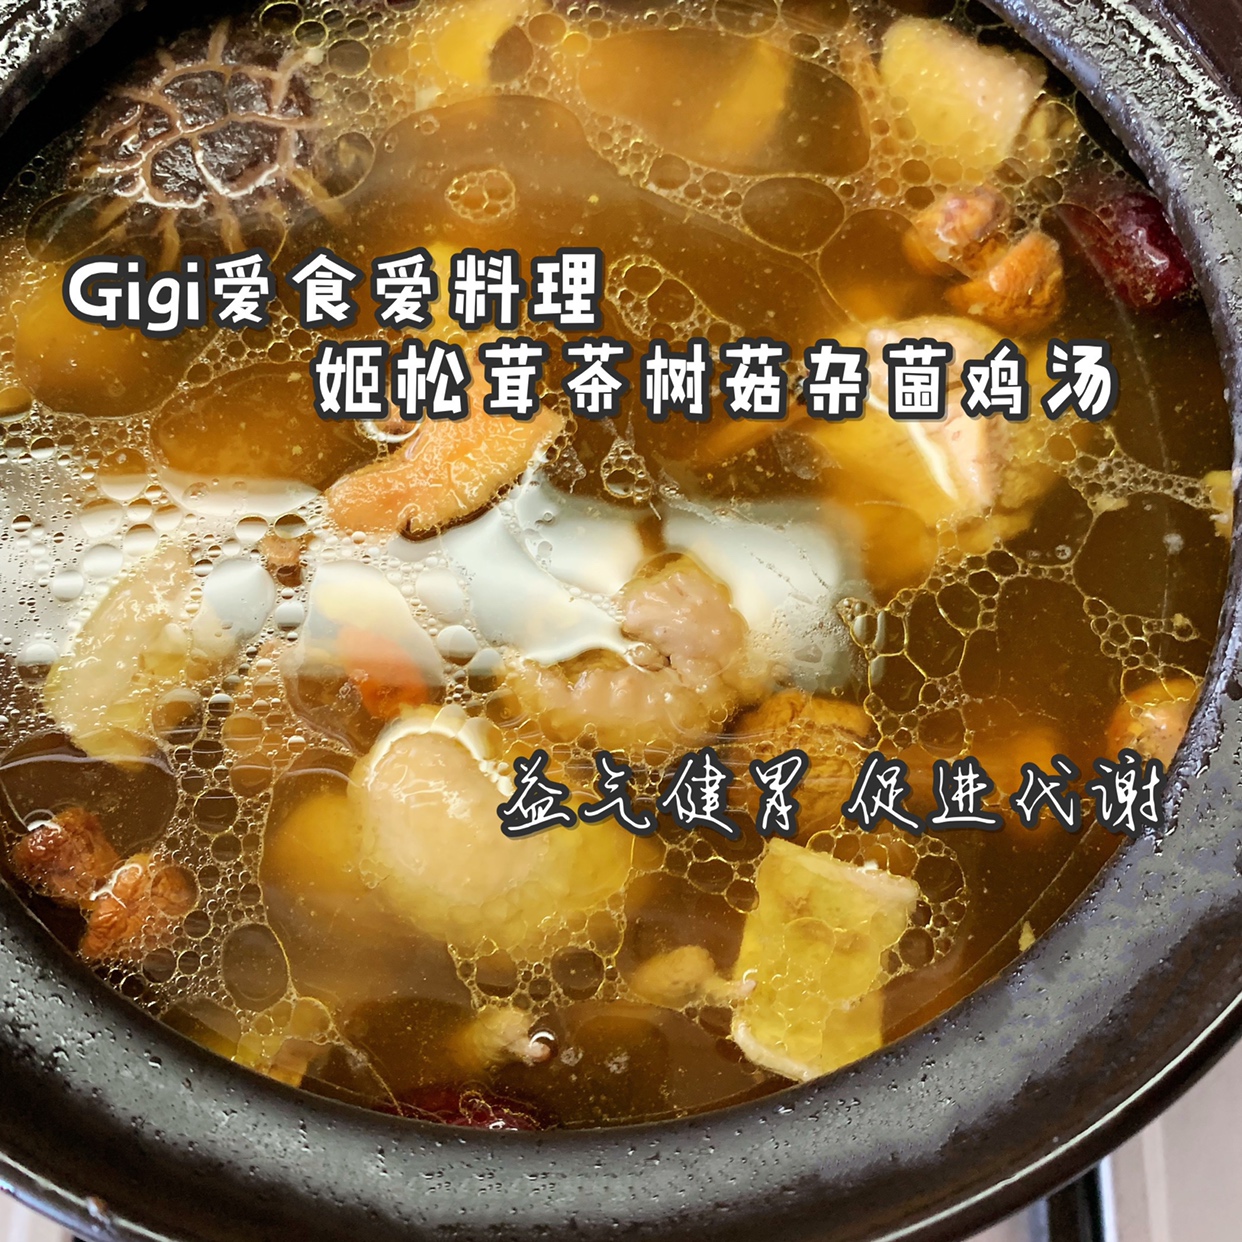 姬松茸茶树菇杂菌鸡汤的做法